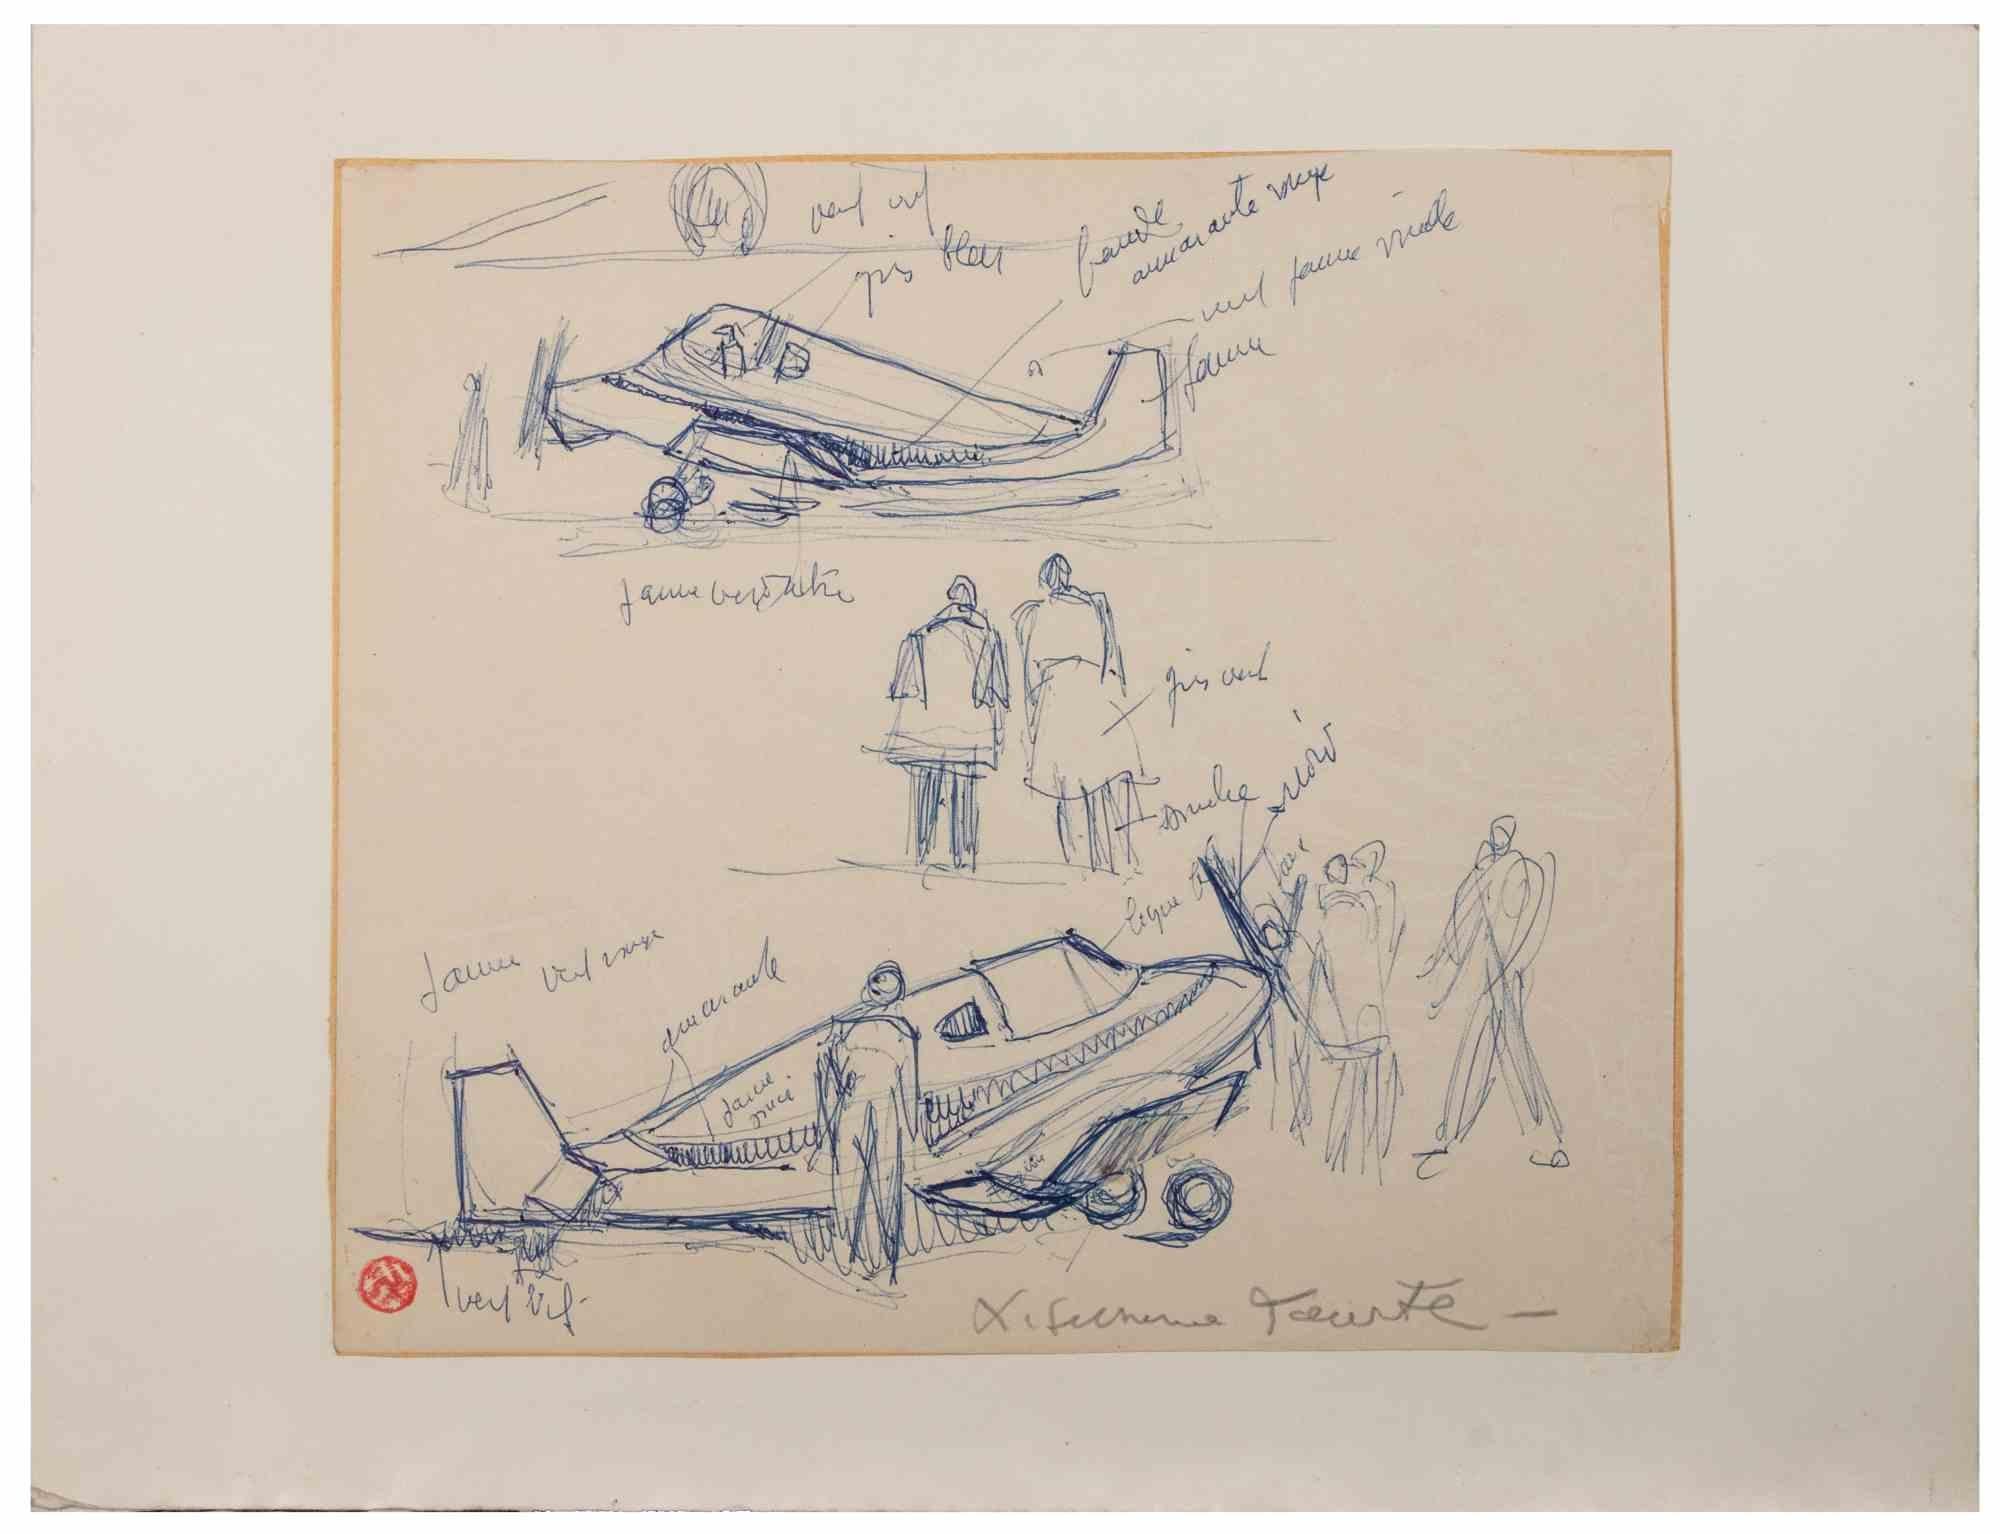 Der Flughafen  ist ein Kunstwerk von Suzanne Tourte aus den 1940er Jahren. 

Stift auf Papier.

Im unteren Rand handschriftlich signiert und mit dem Stempel des Künstlers auf der rechten Seite. 

20 x 23 cm. 

Guter Zustand, abgesehen von einer